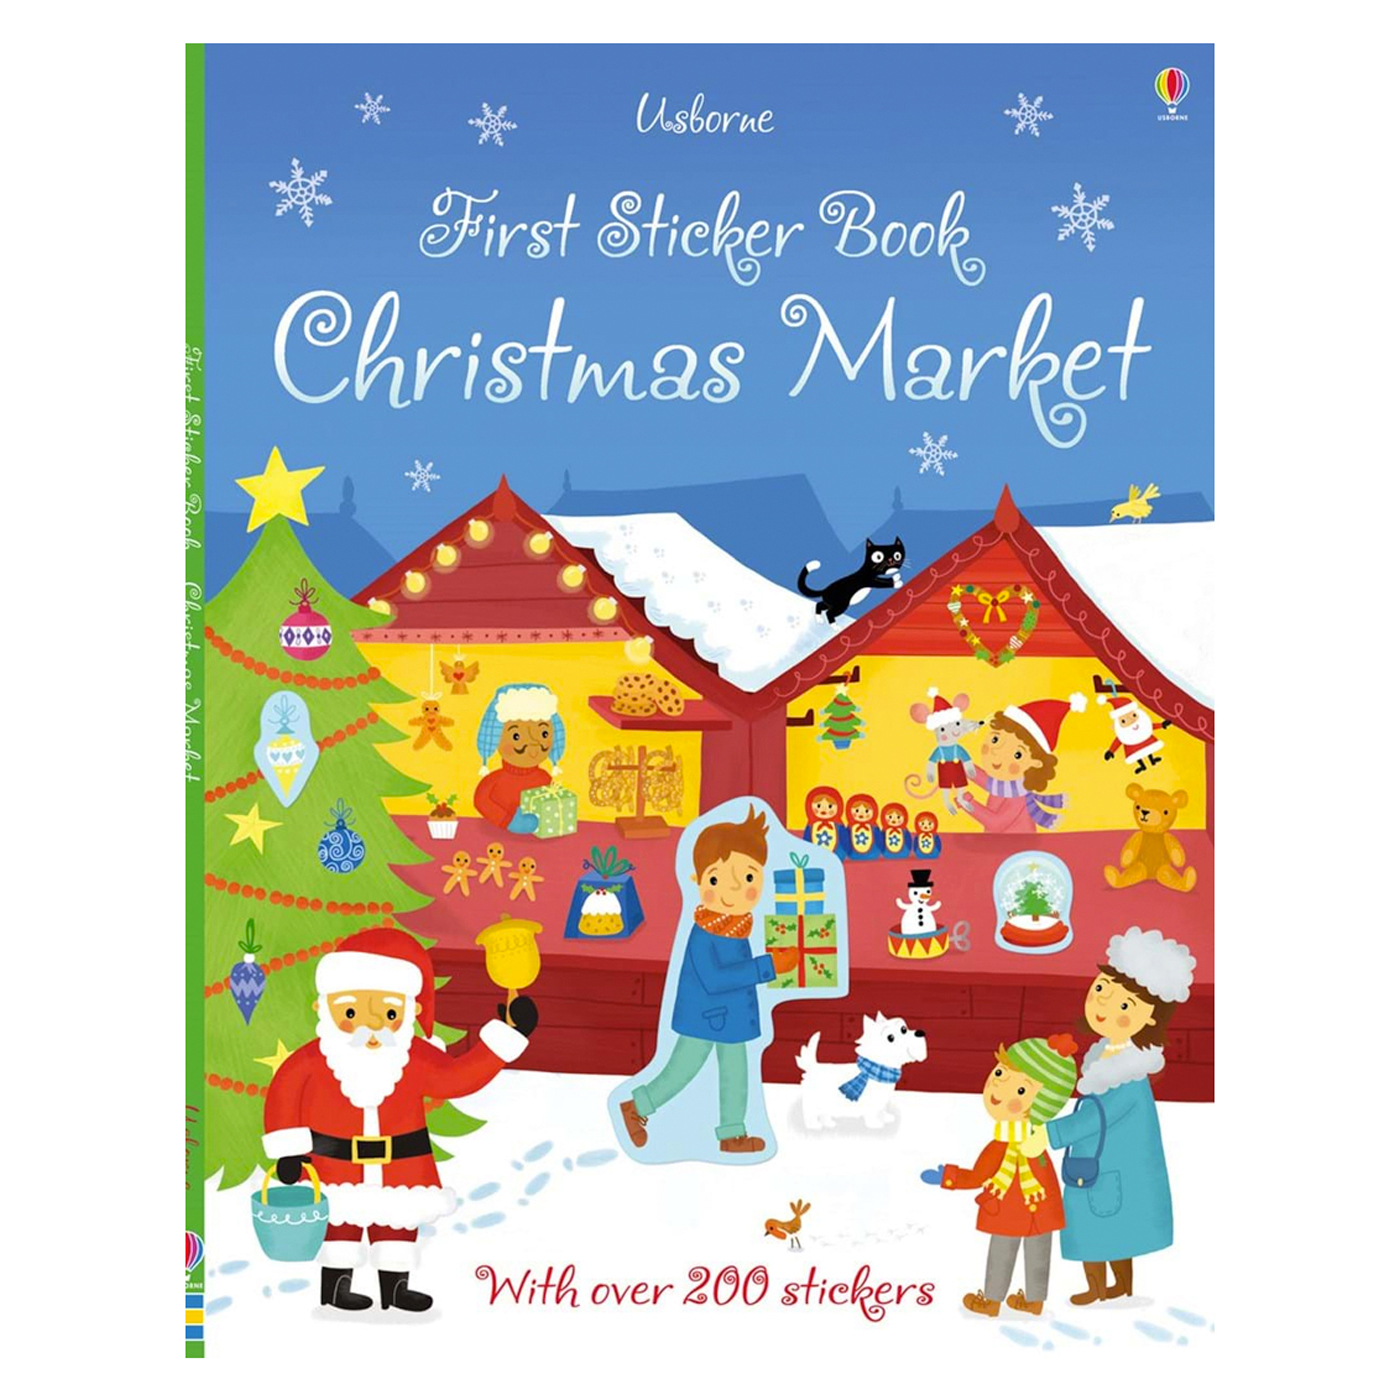  First Sticker Book Christmas Market